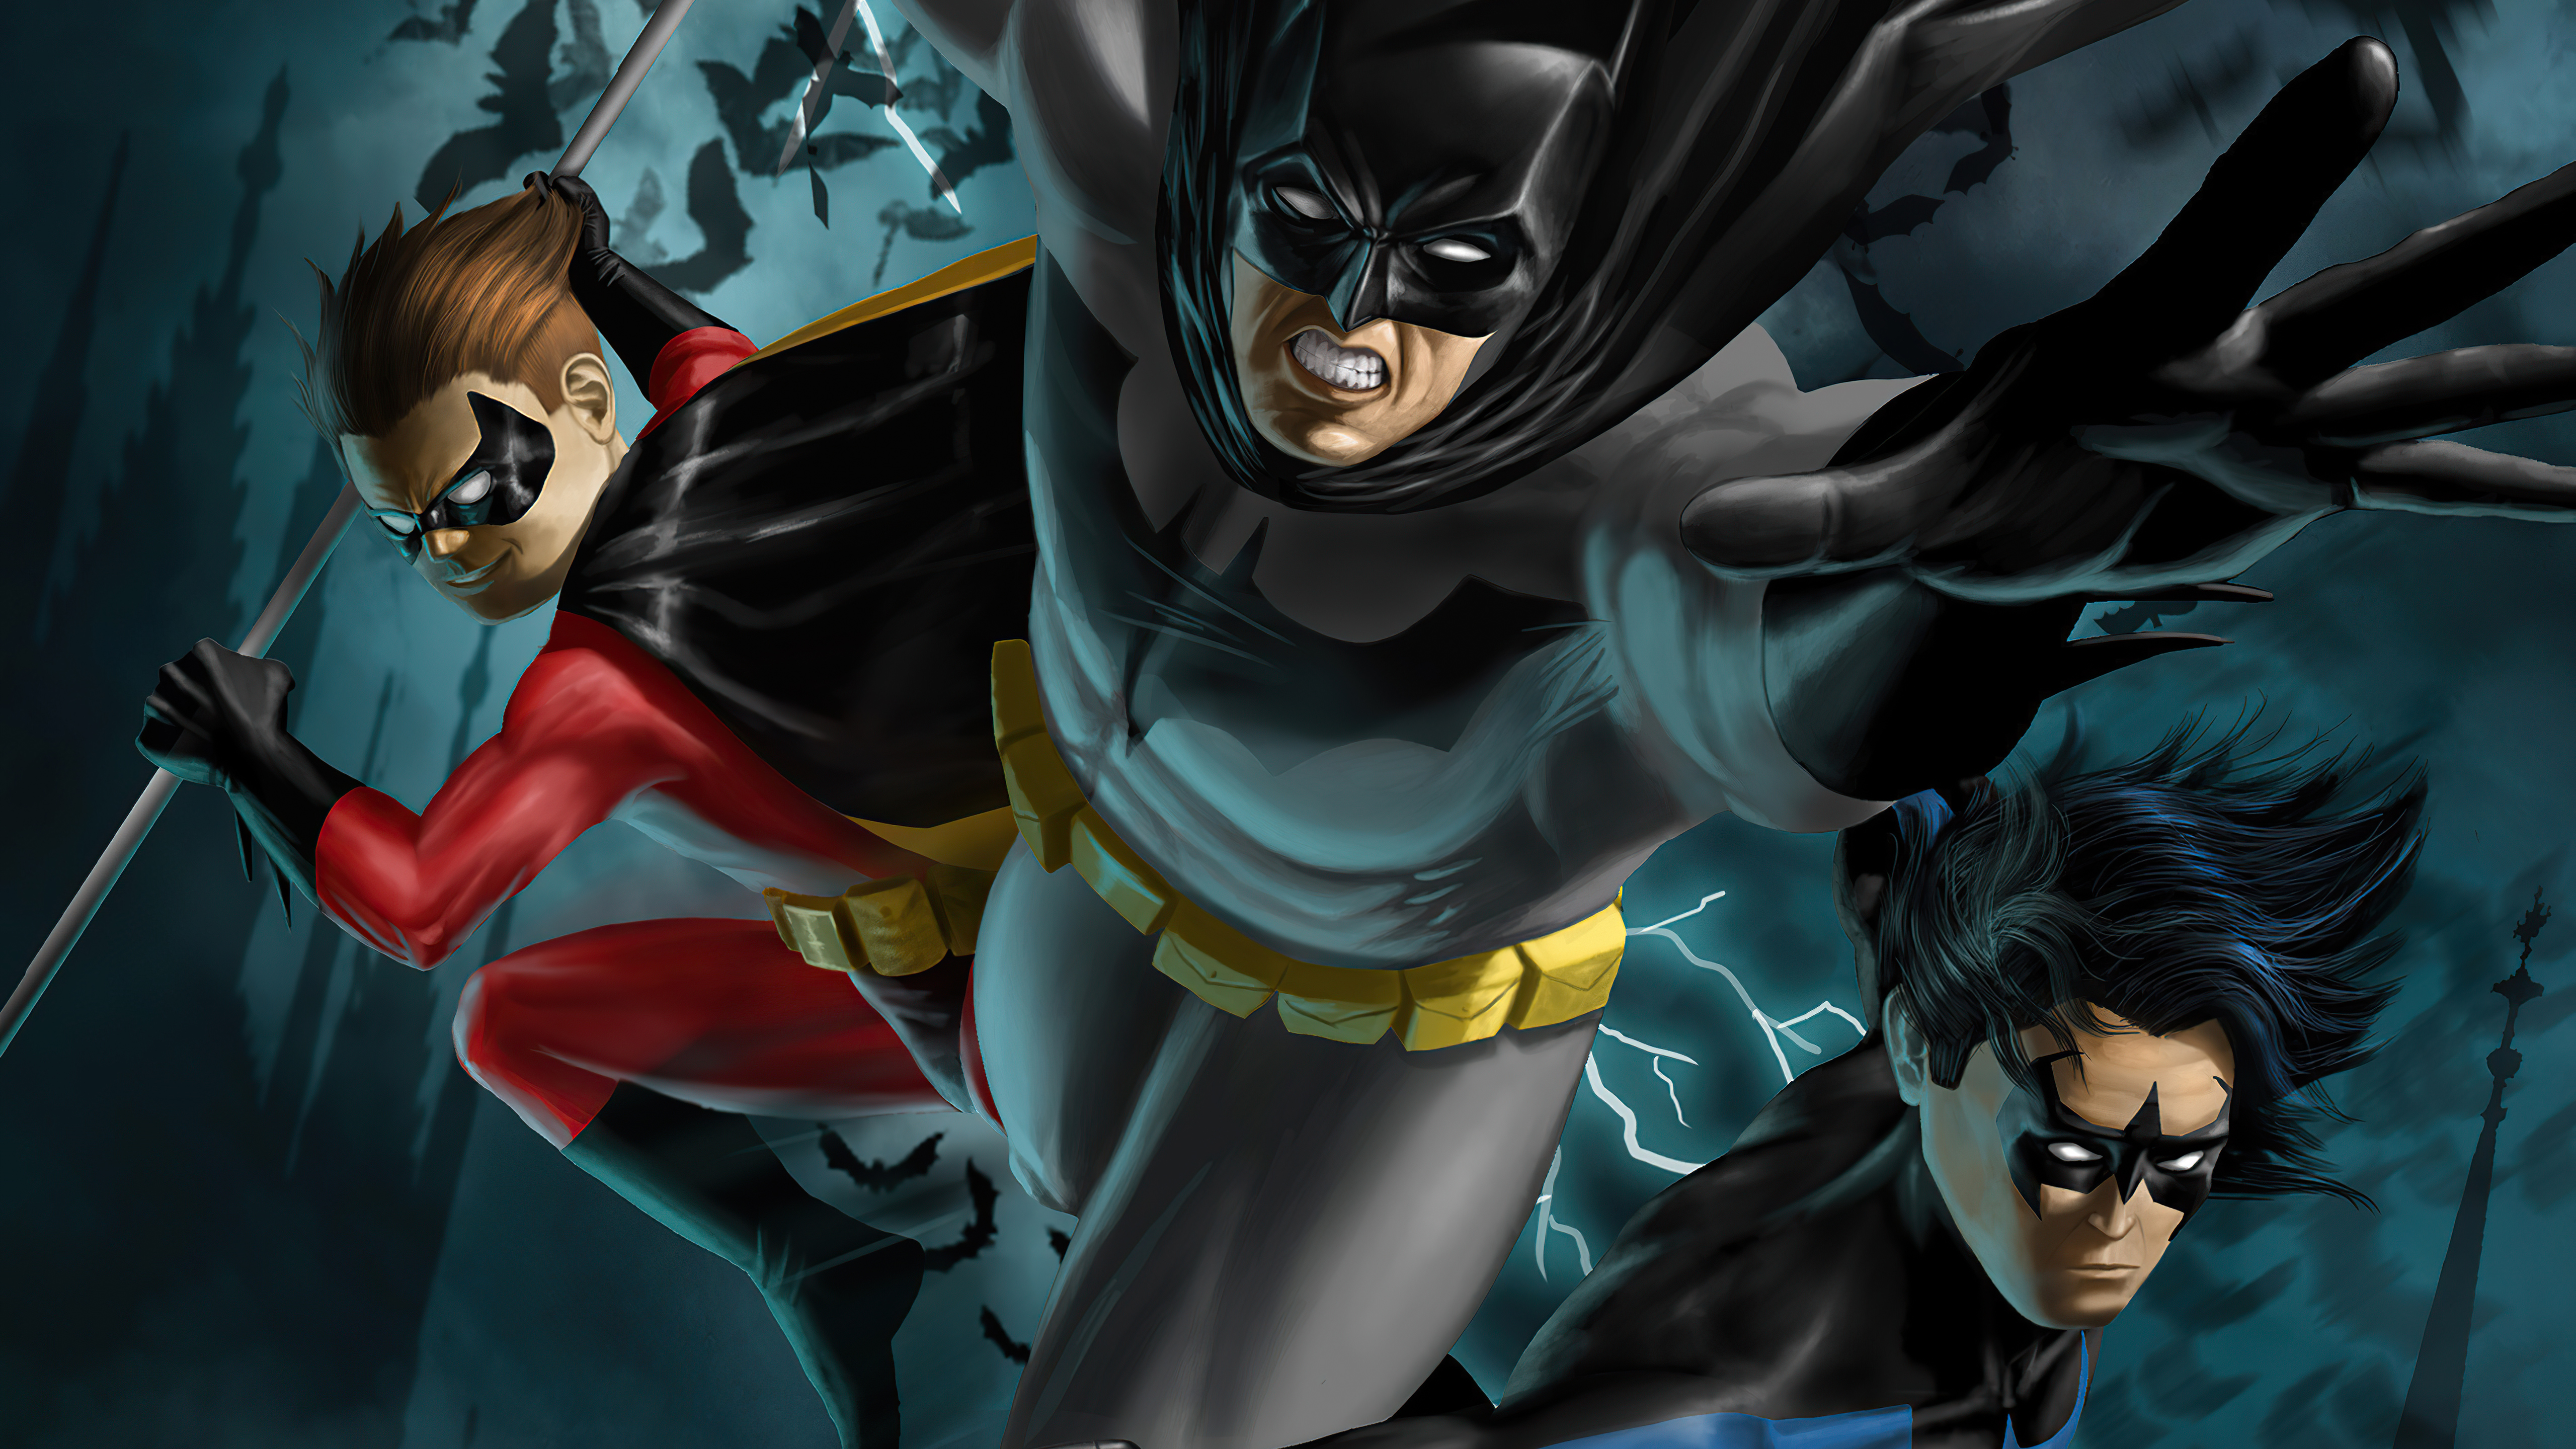 Descarga gratuita de fondo de pantalla para móvil de Historietas, The Batman, Dc Comics, Ala Noche, Robin (Dc Cómics), Dick Grayson.